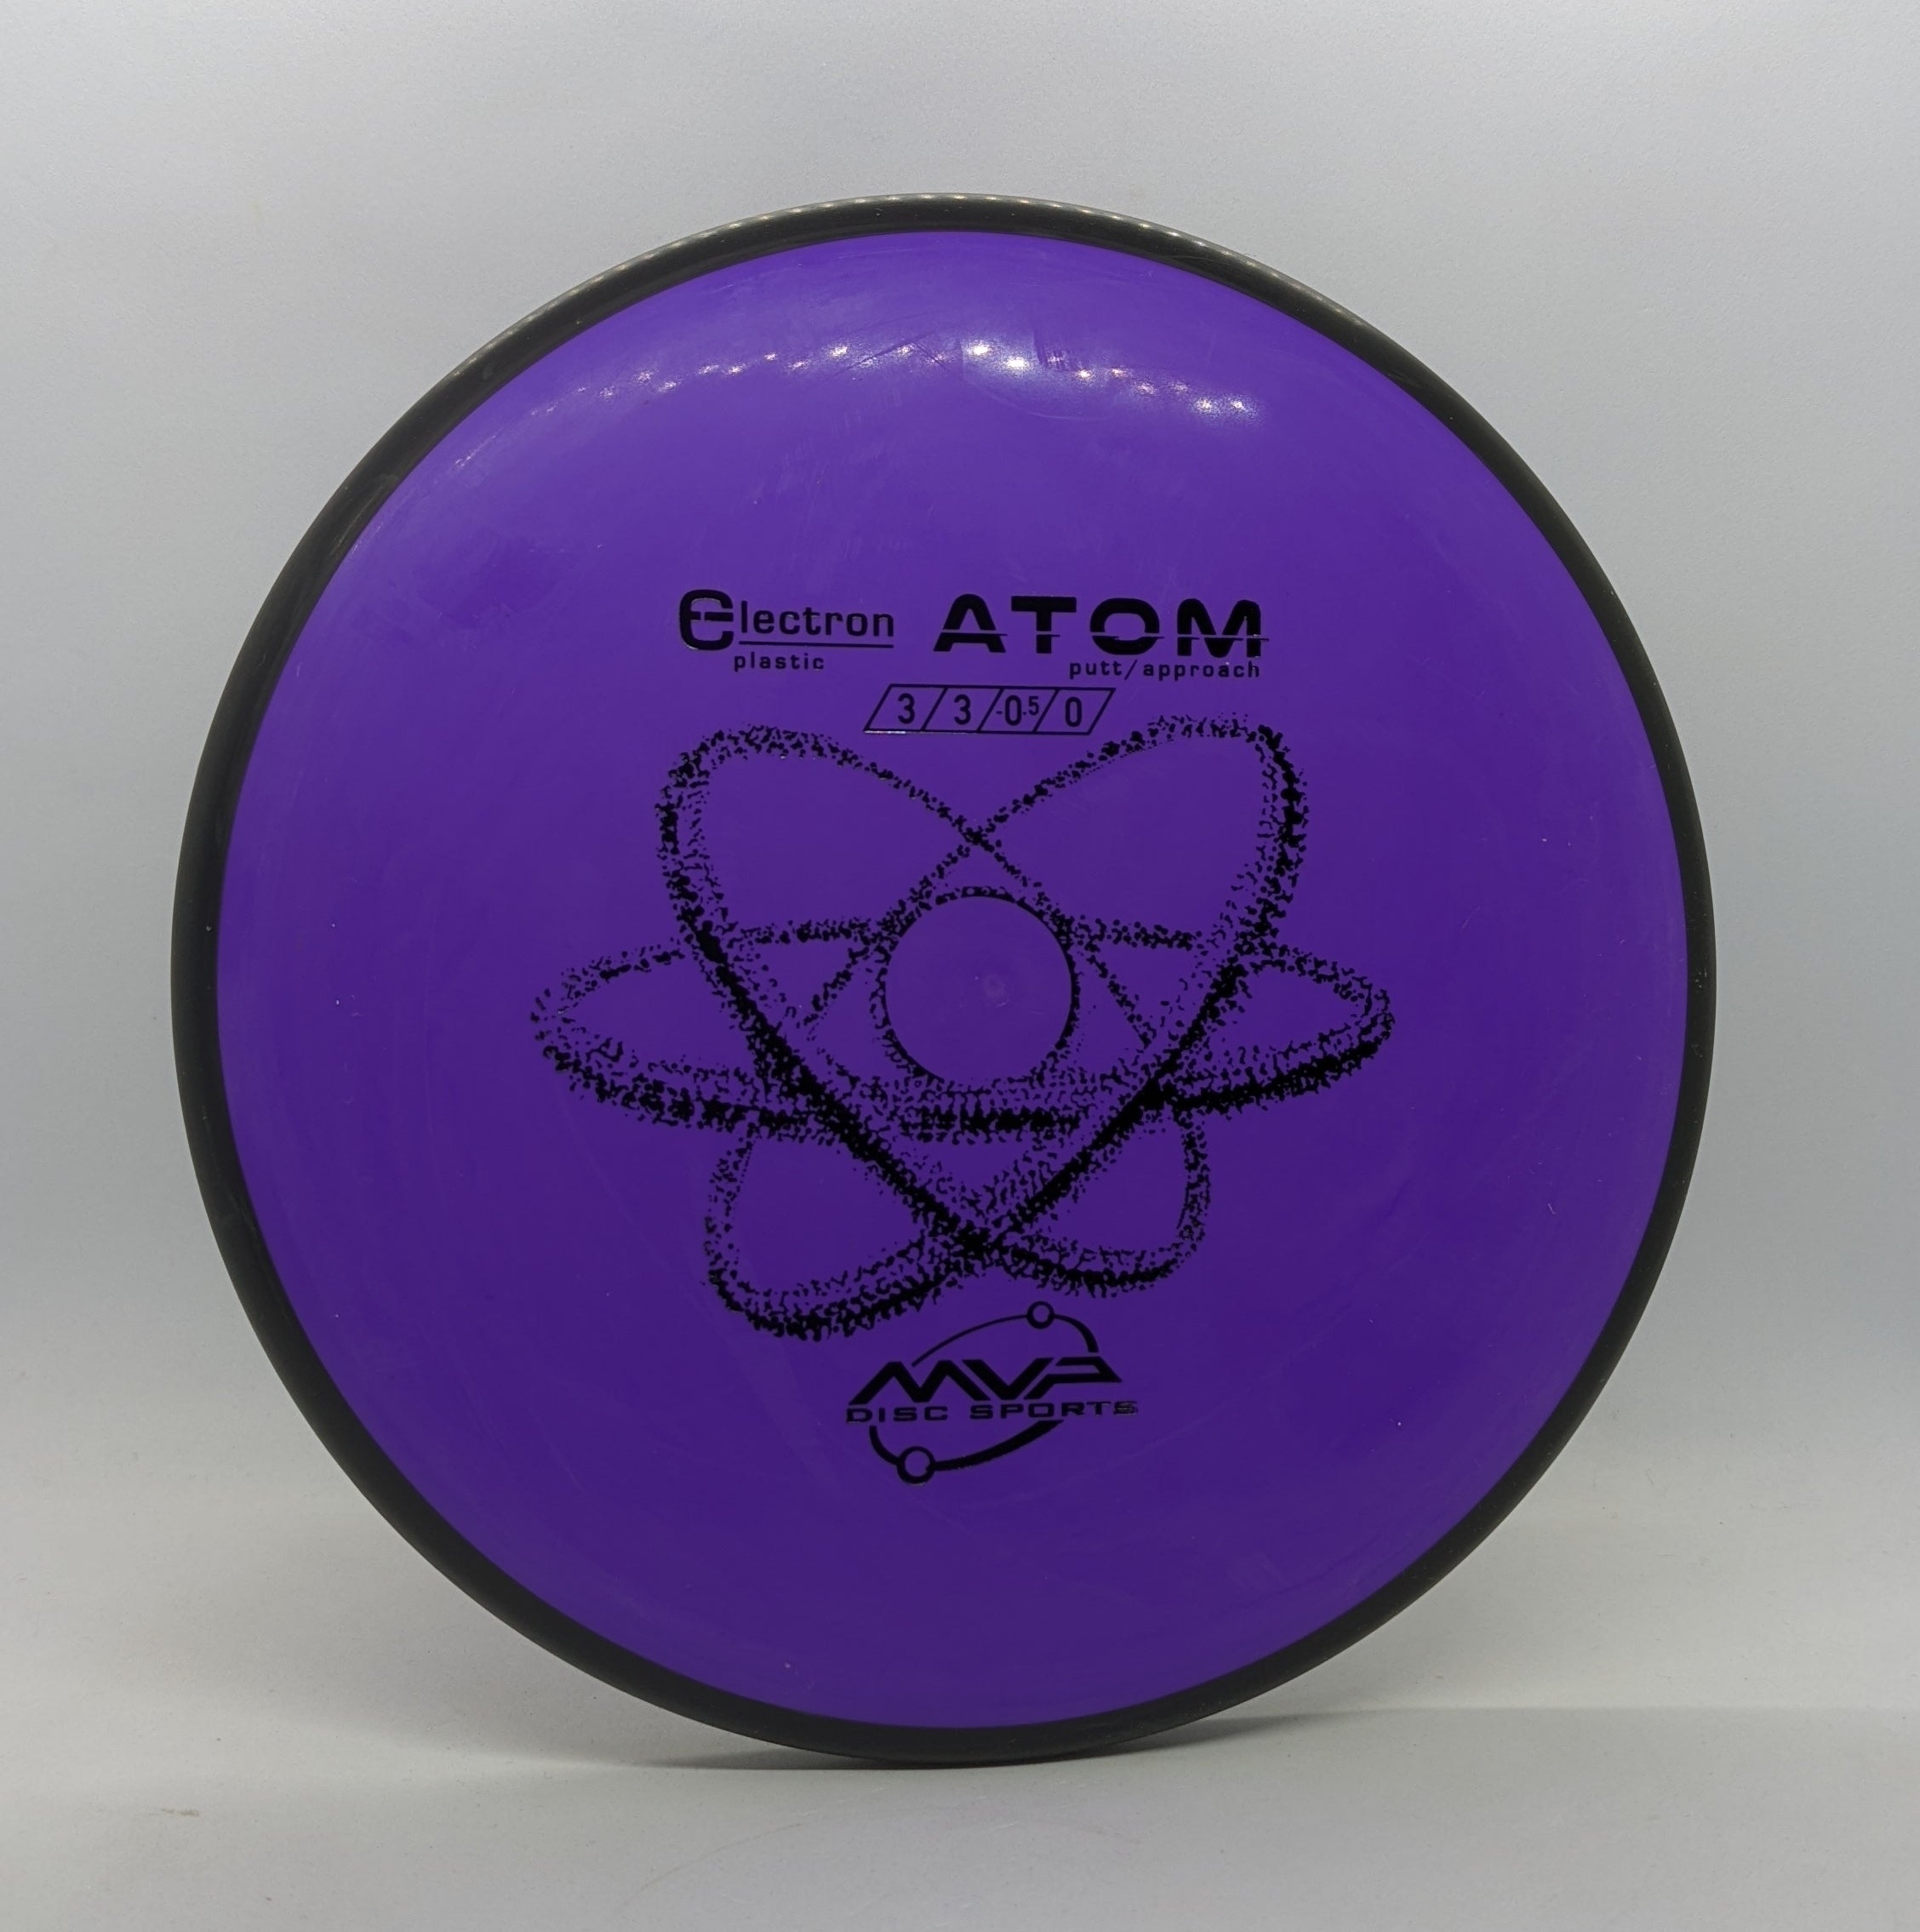 Electron Atom - 0